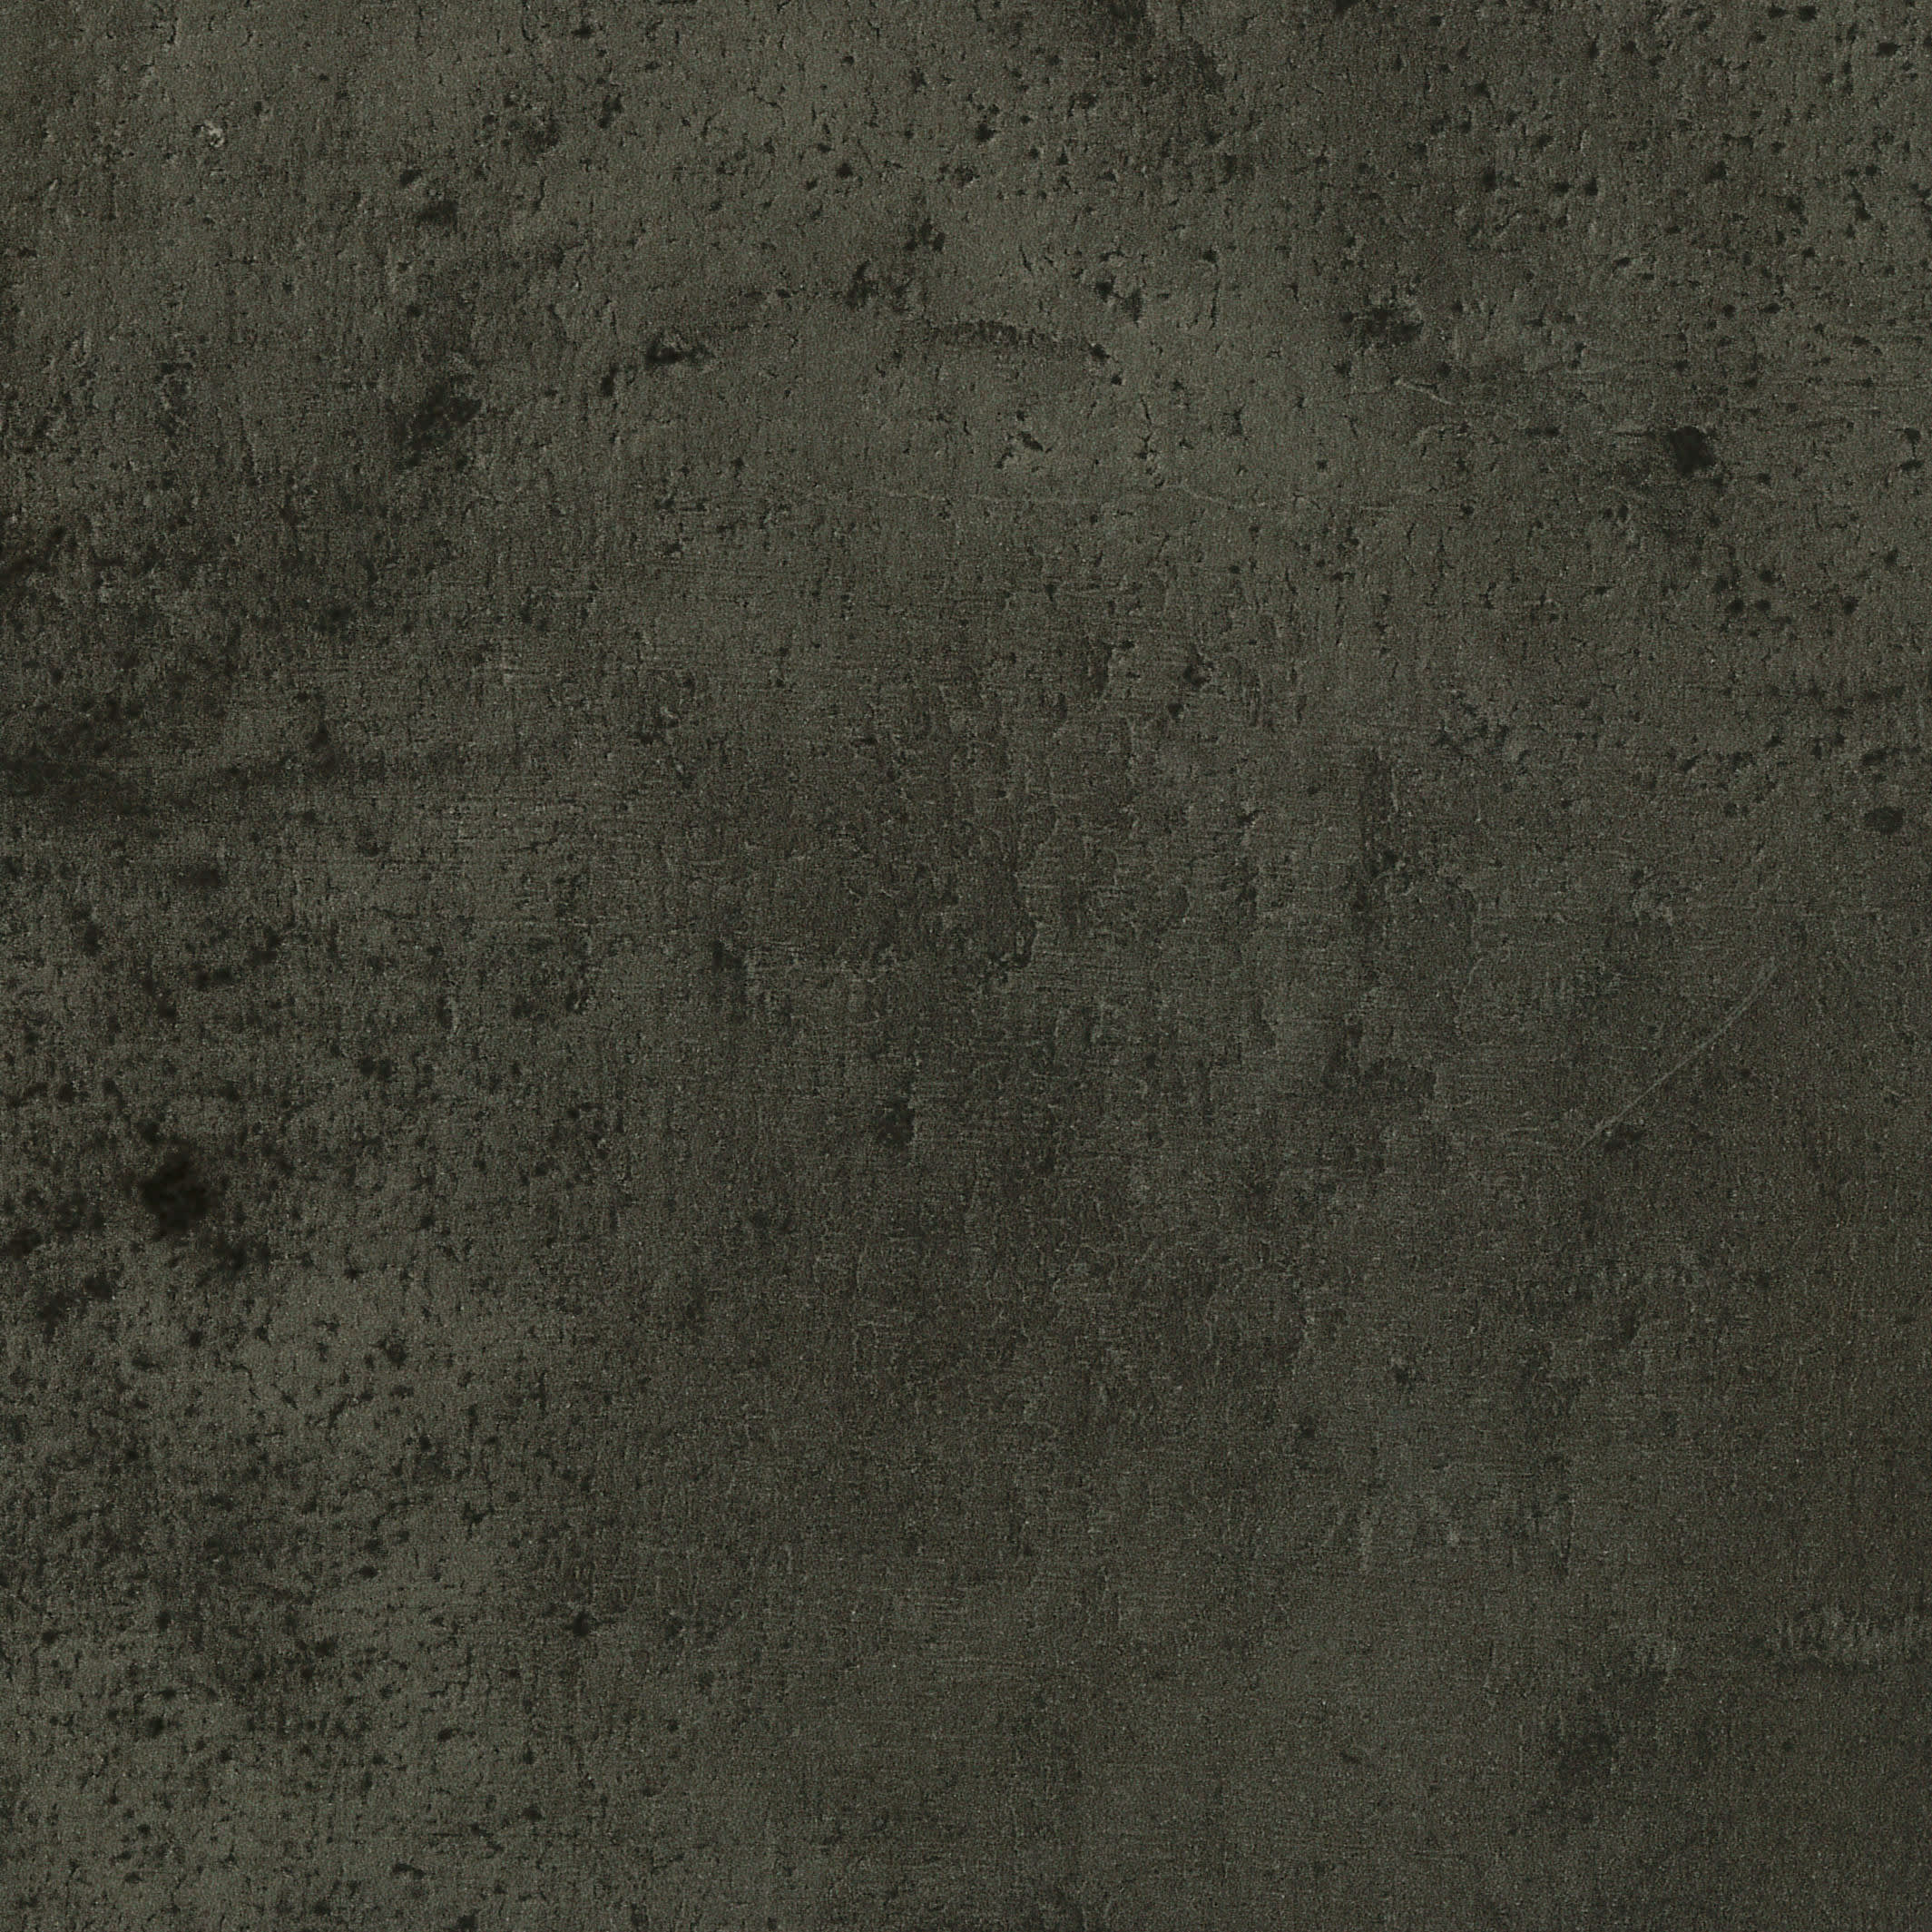 Duarti By Calypso Chicago Concrete Postformed Slimline Worktop